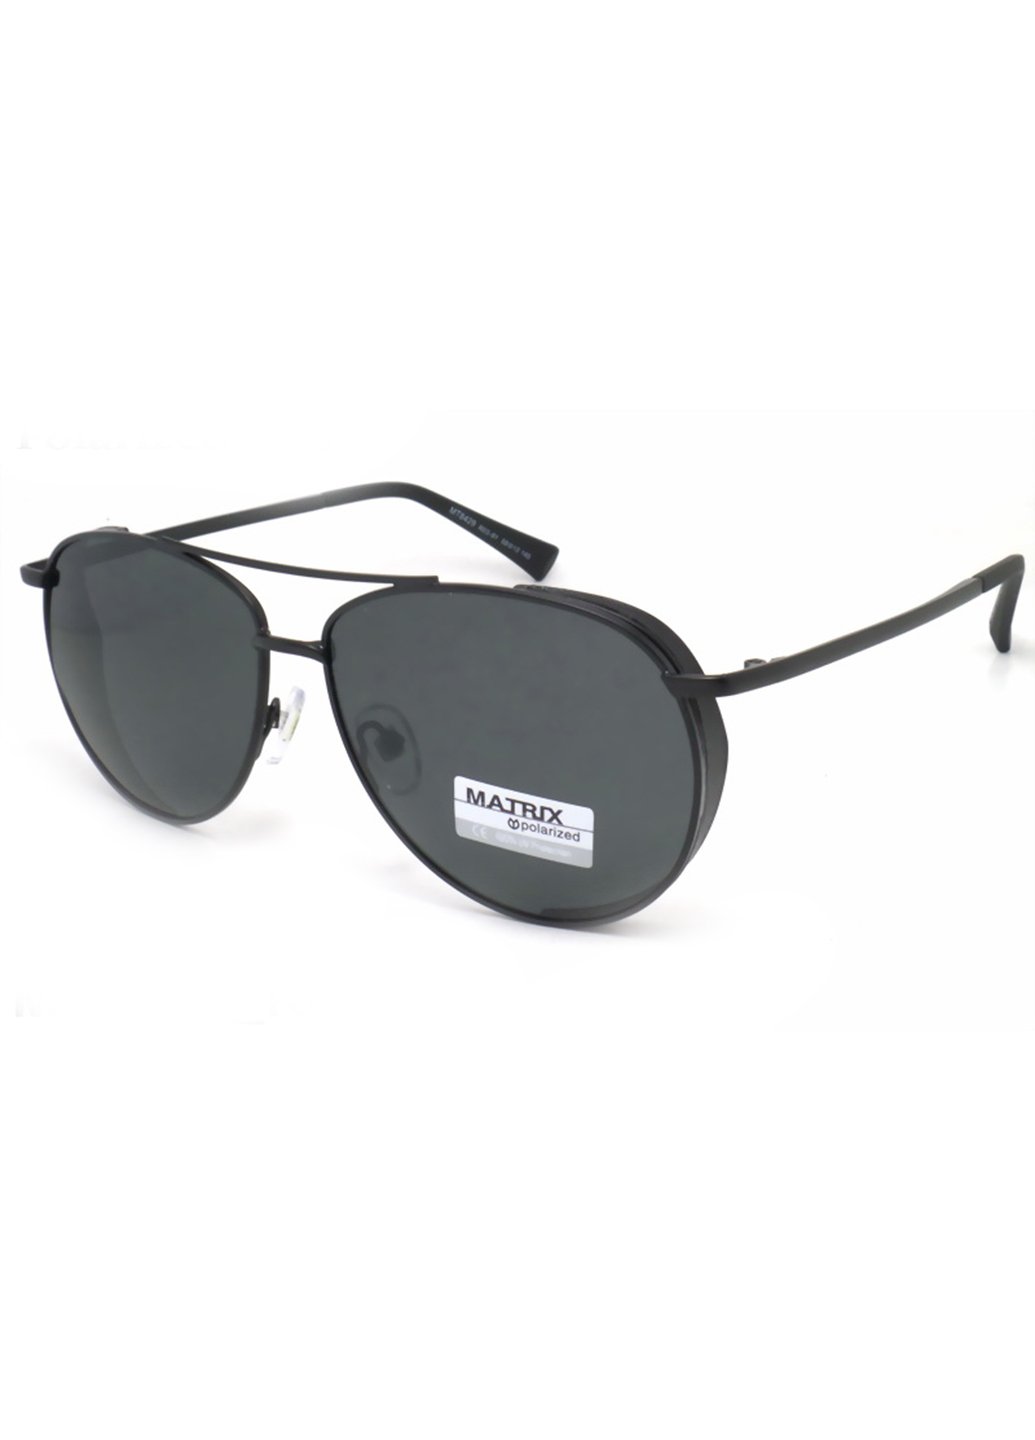 Купить Черные мужские солнцезащитные очки Matrix с поляризацией MT8429 111019 в интернет-магазине